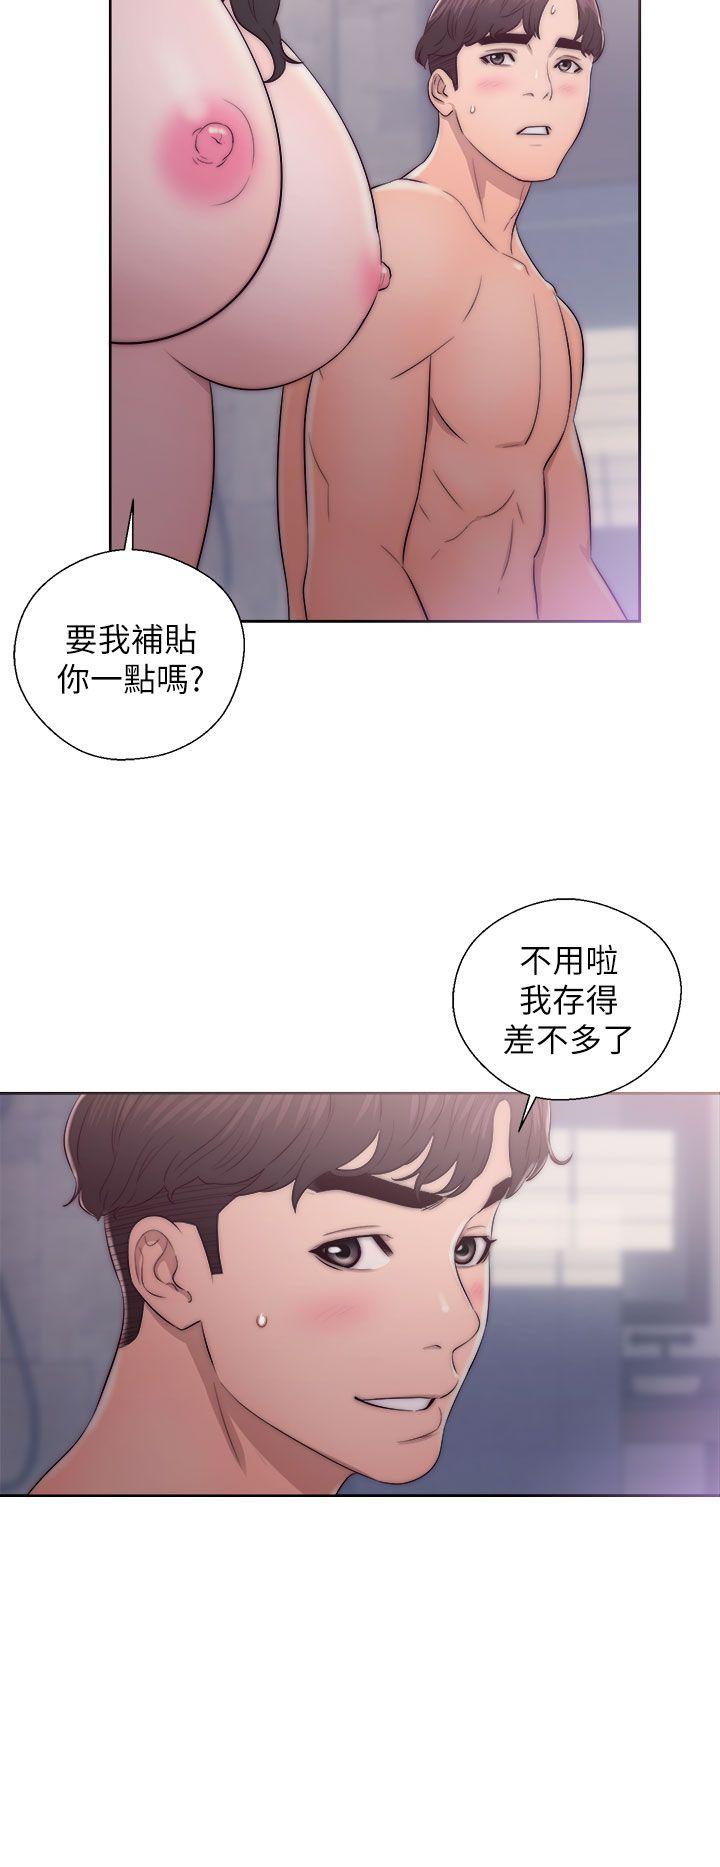 韩国污漫画 青春:逆齡小鮮肉 第17话 36